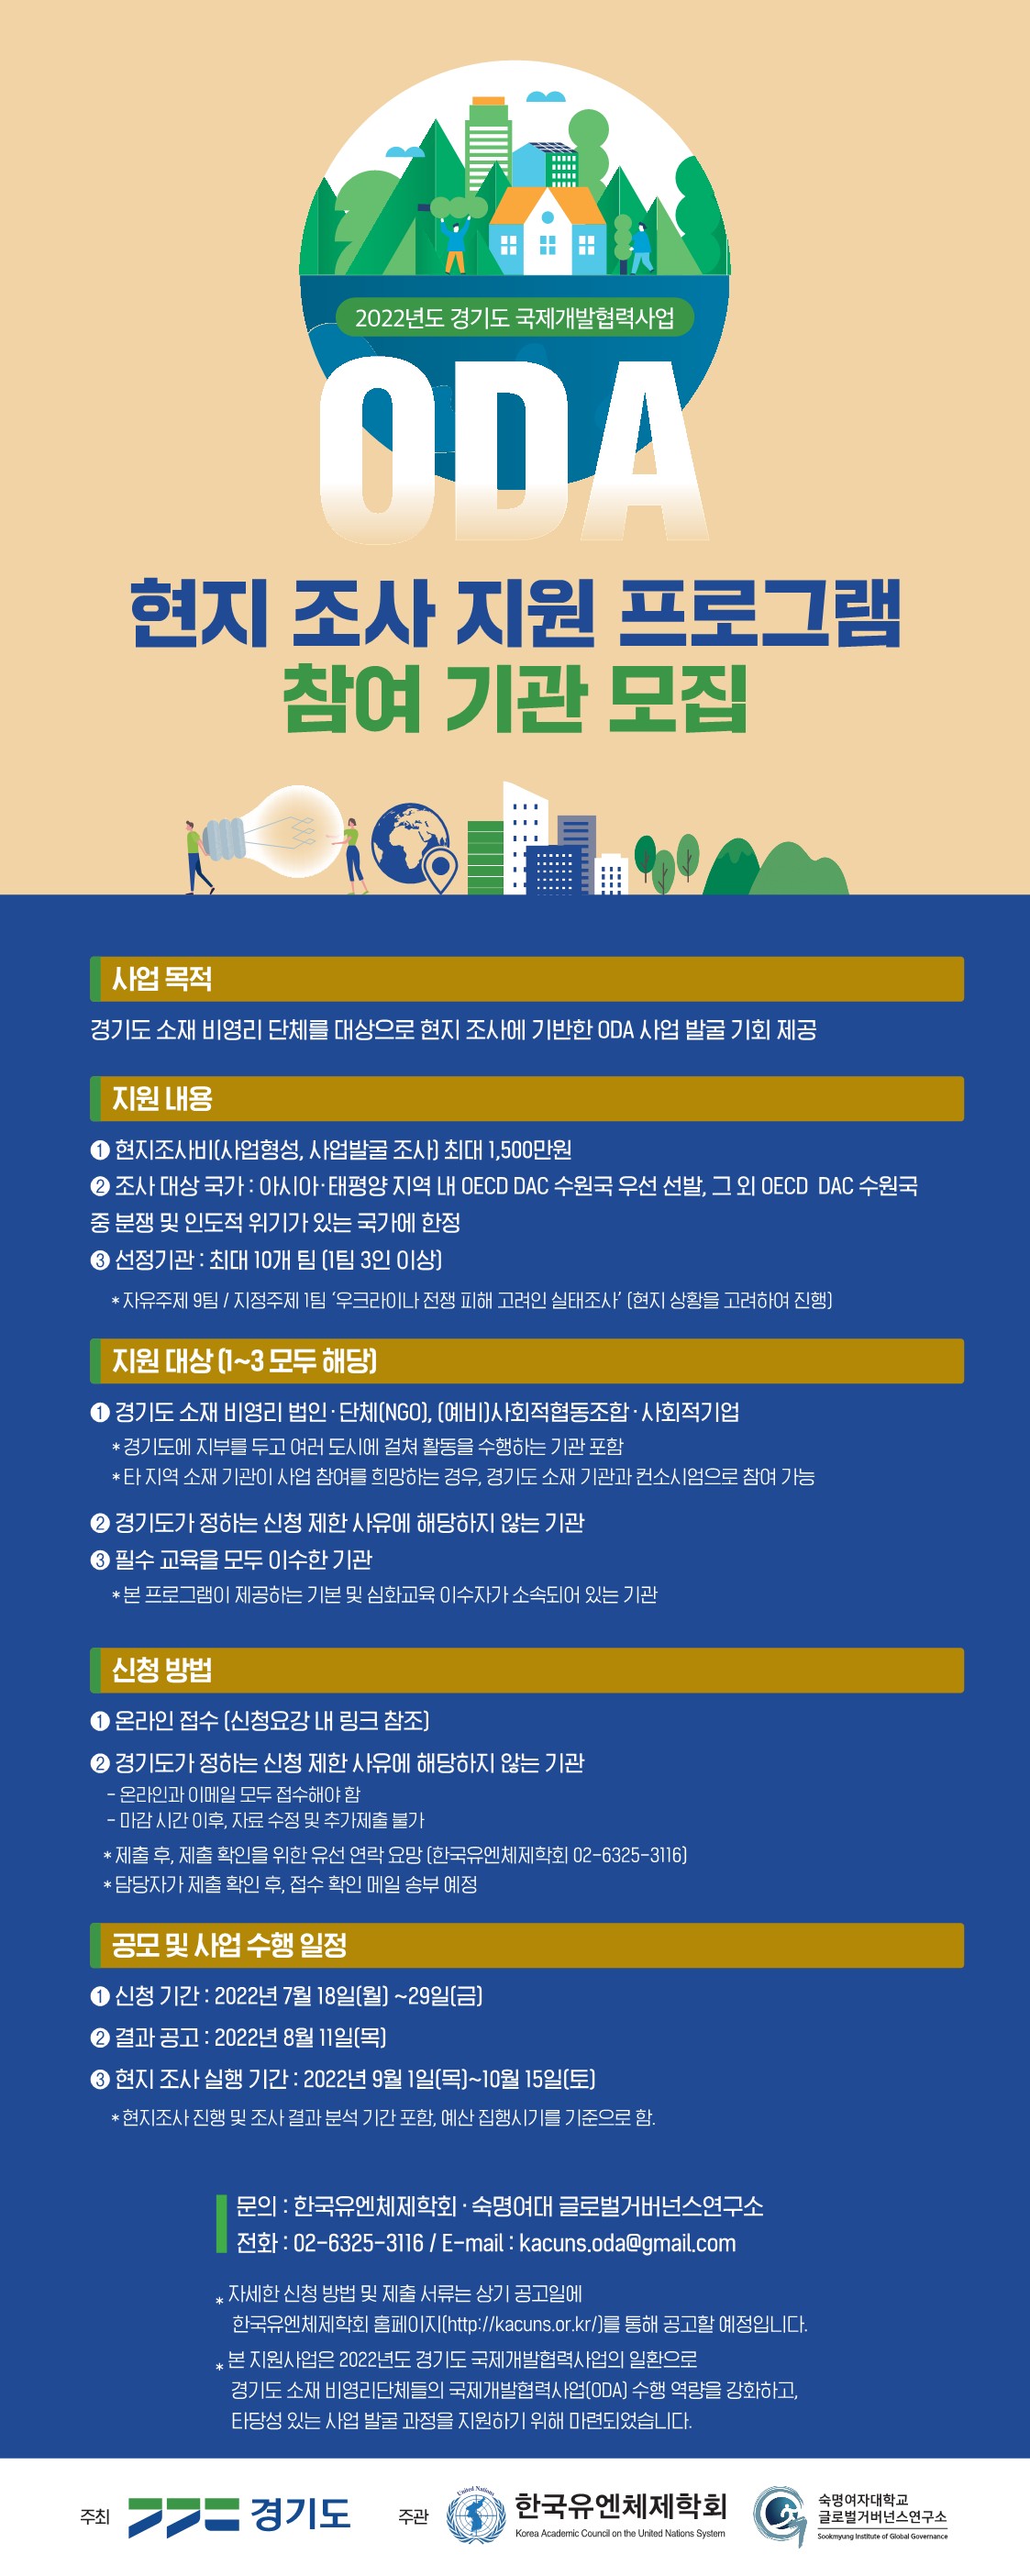 [경기도 ODA 역량강화 사업] 현지조사 지원 프로그램 참여기관 모집  (접수 기간 연장~8월 1일(월)까지)